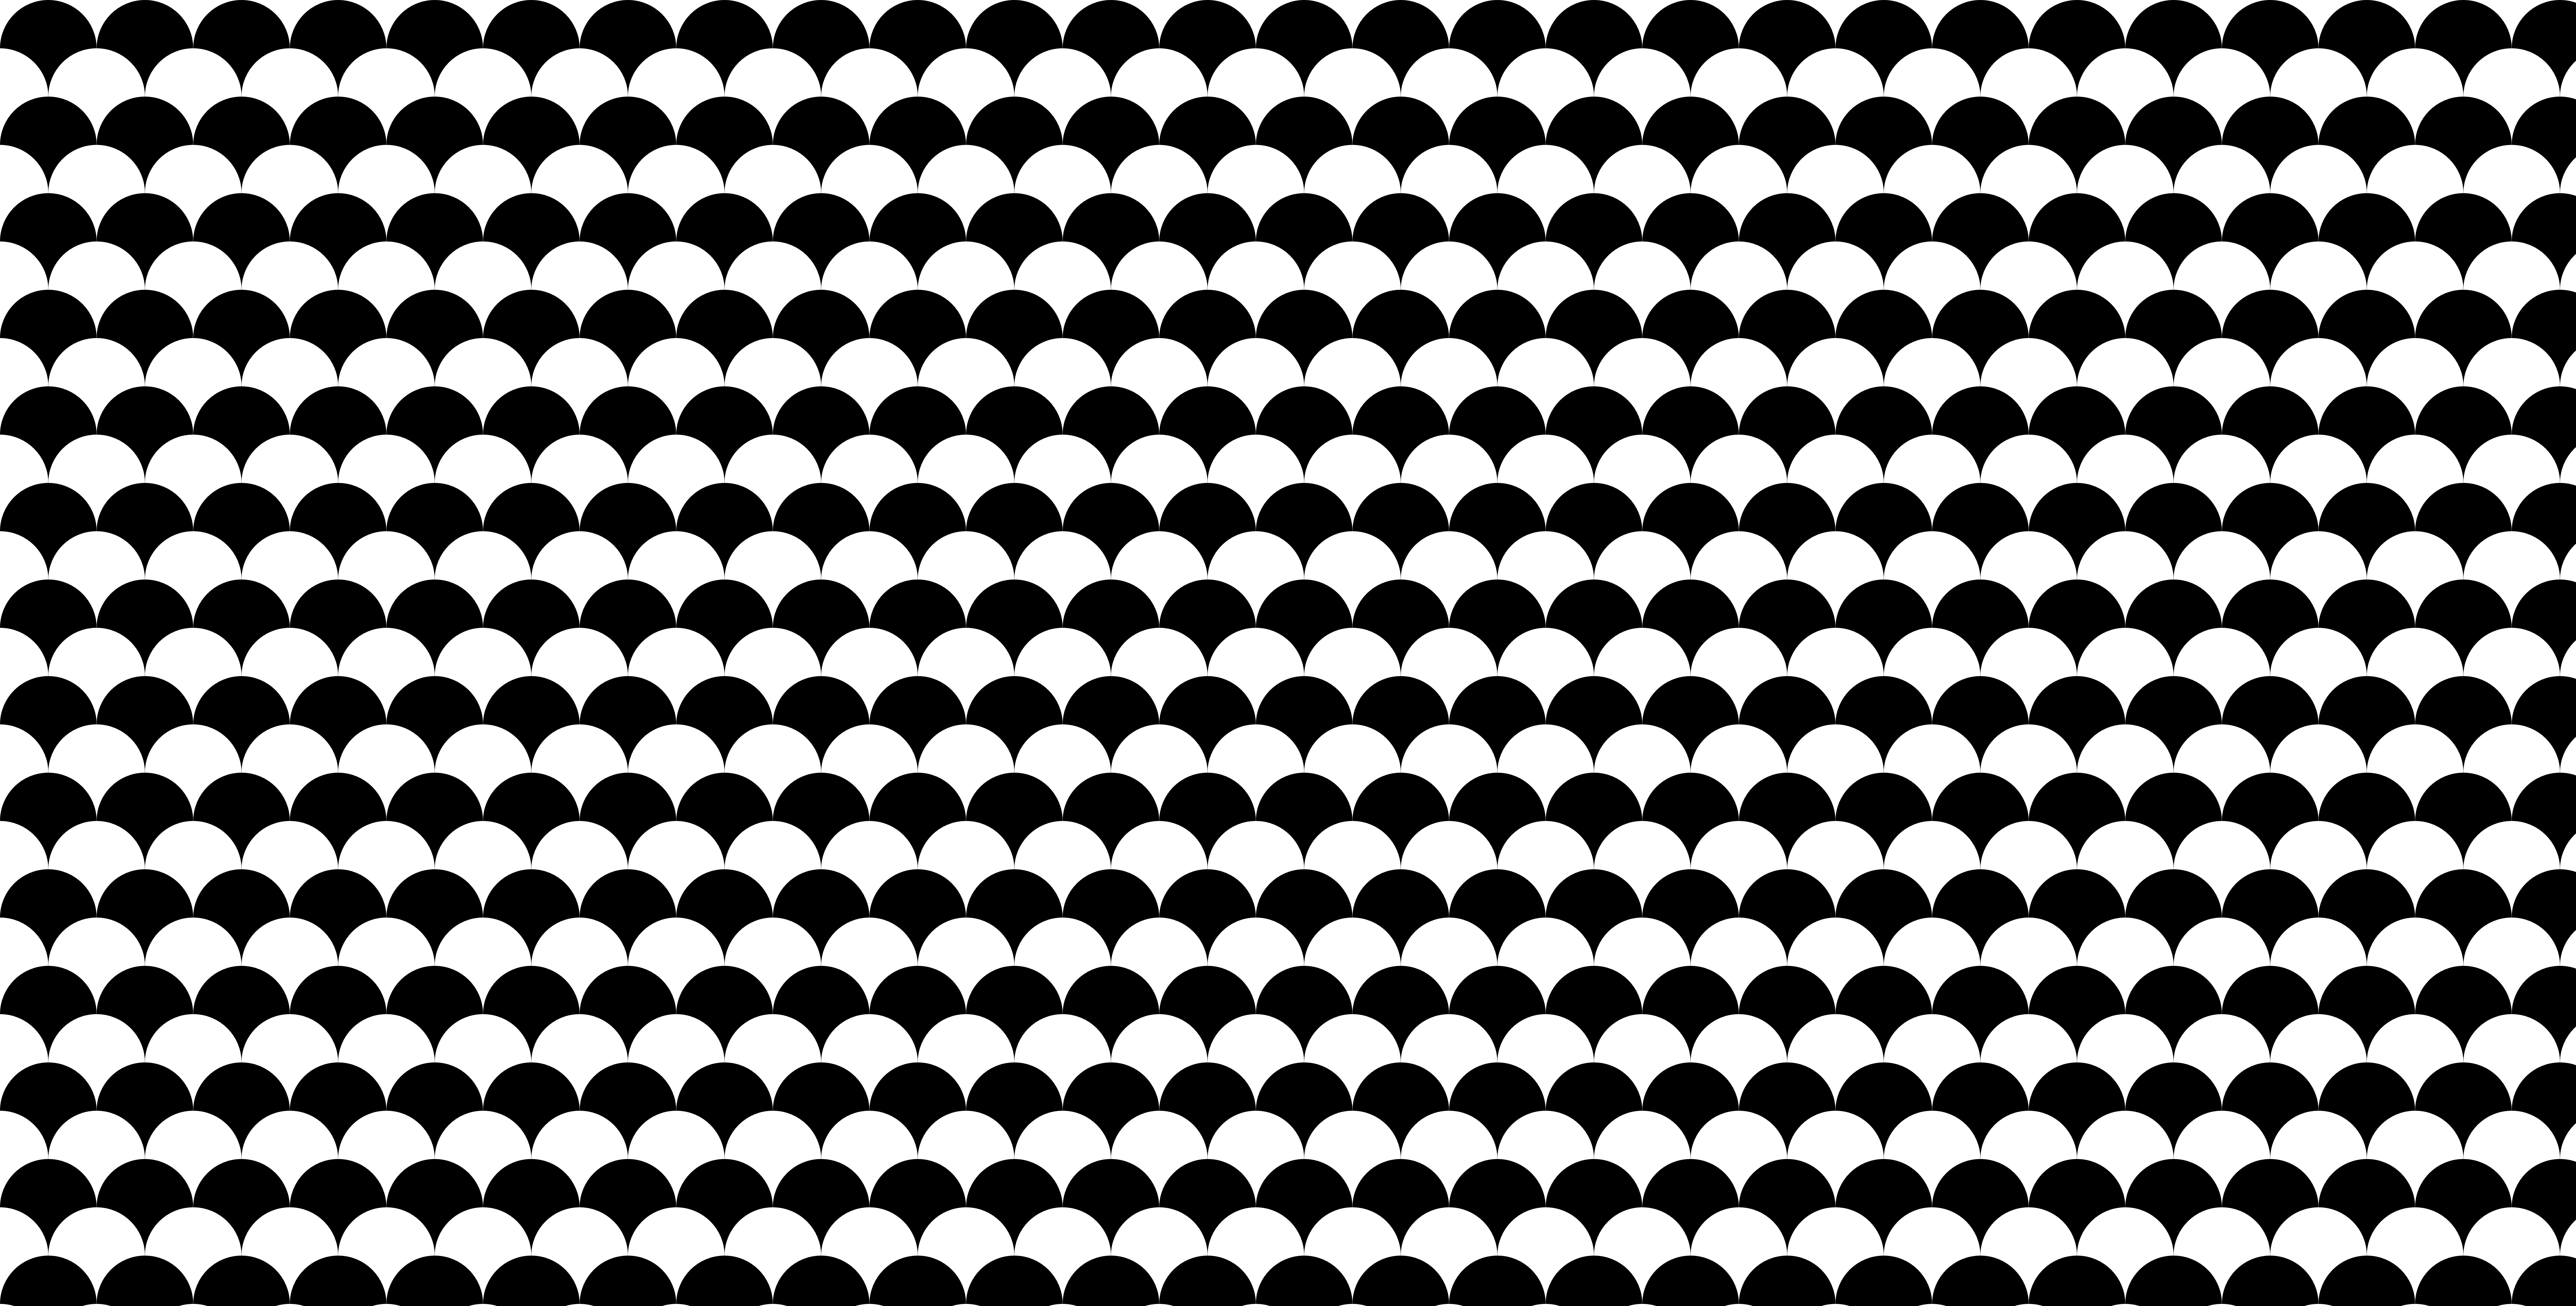 General 8533x4327 tiles digital art minimalism